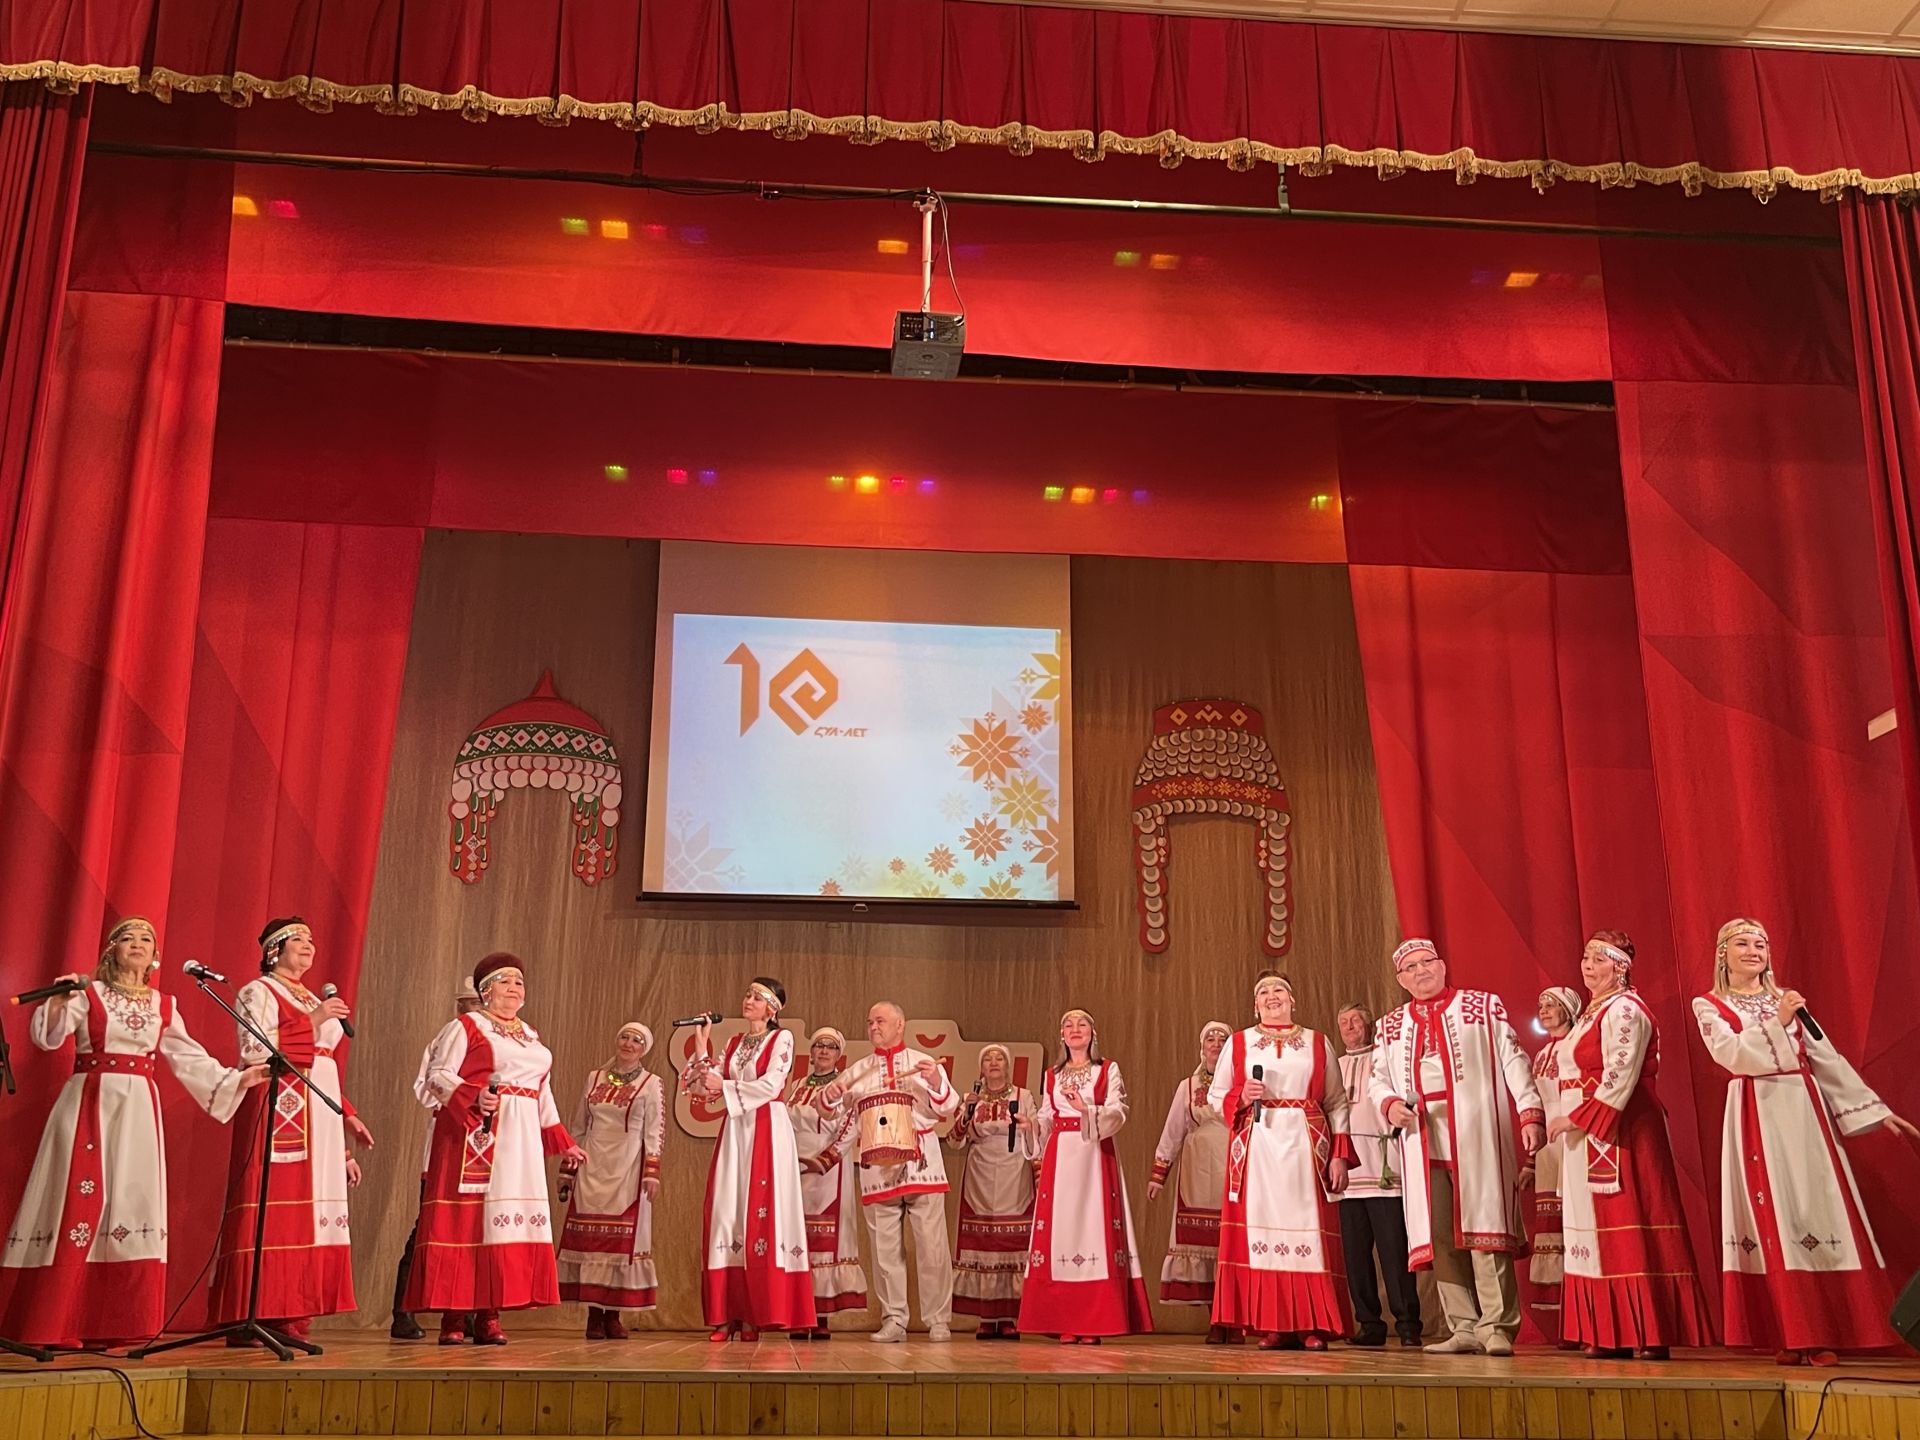 Юбилейный концерт народного ансамбля «Шусам»